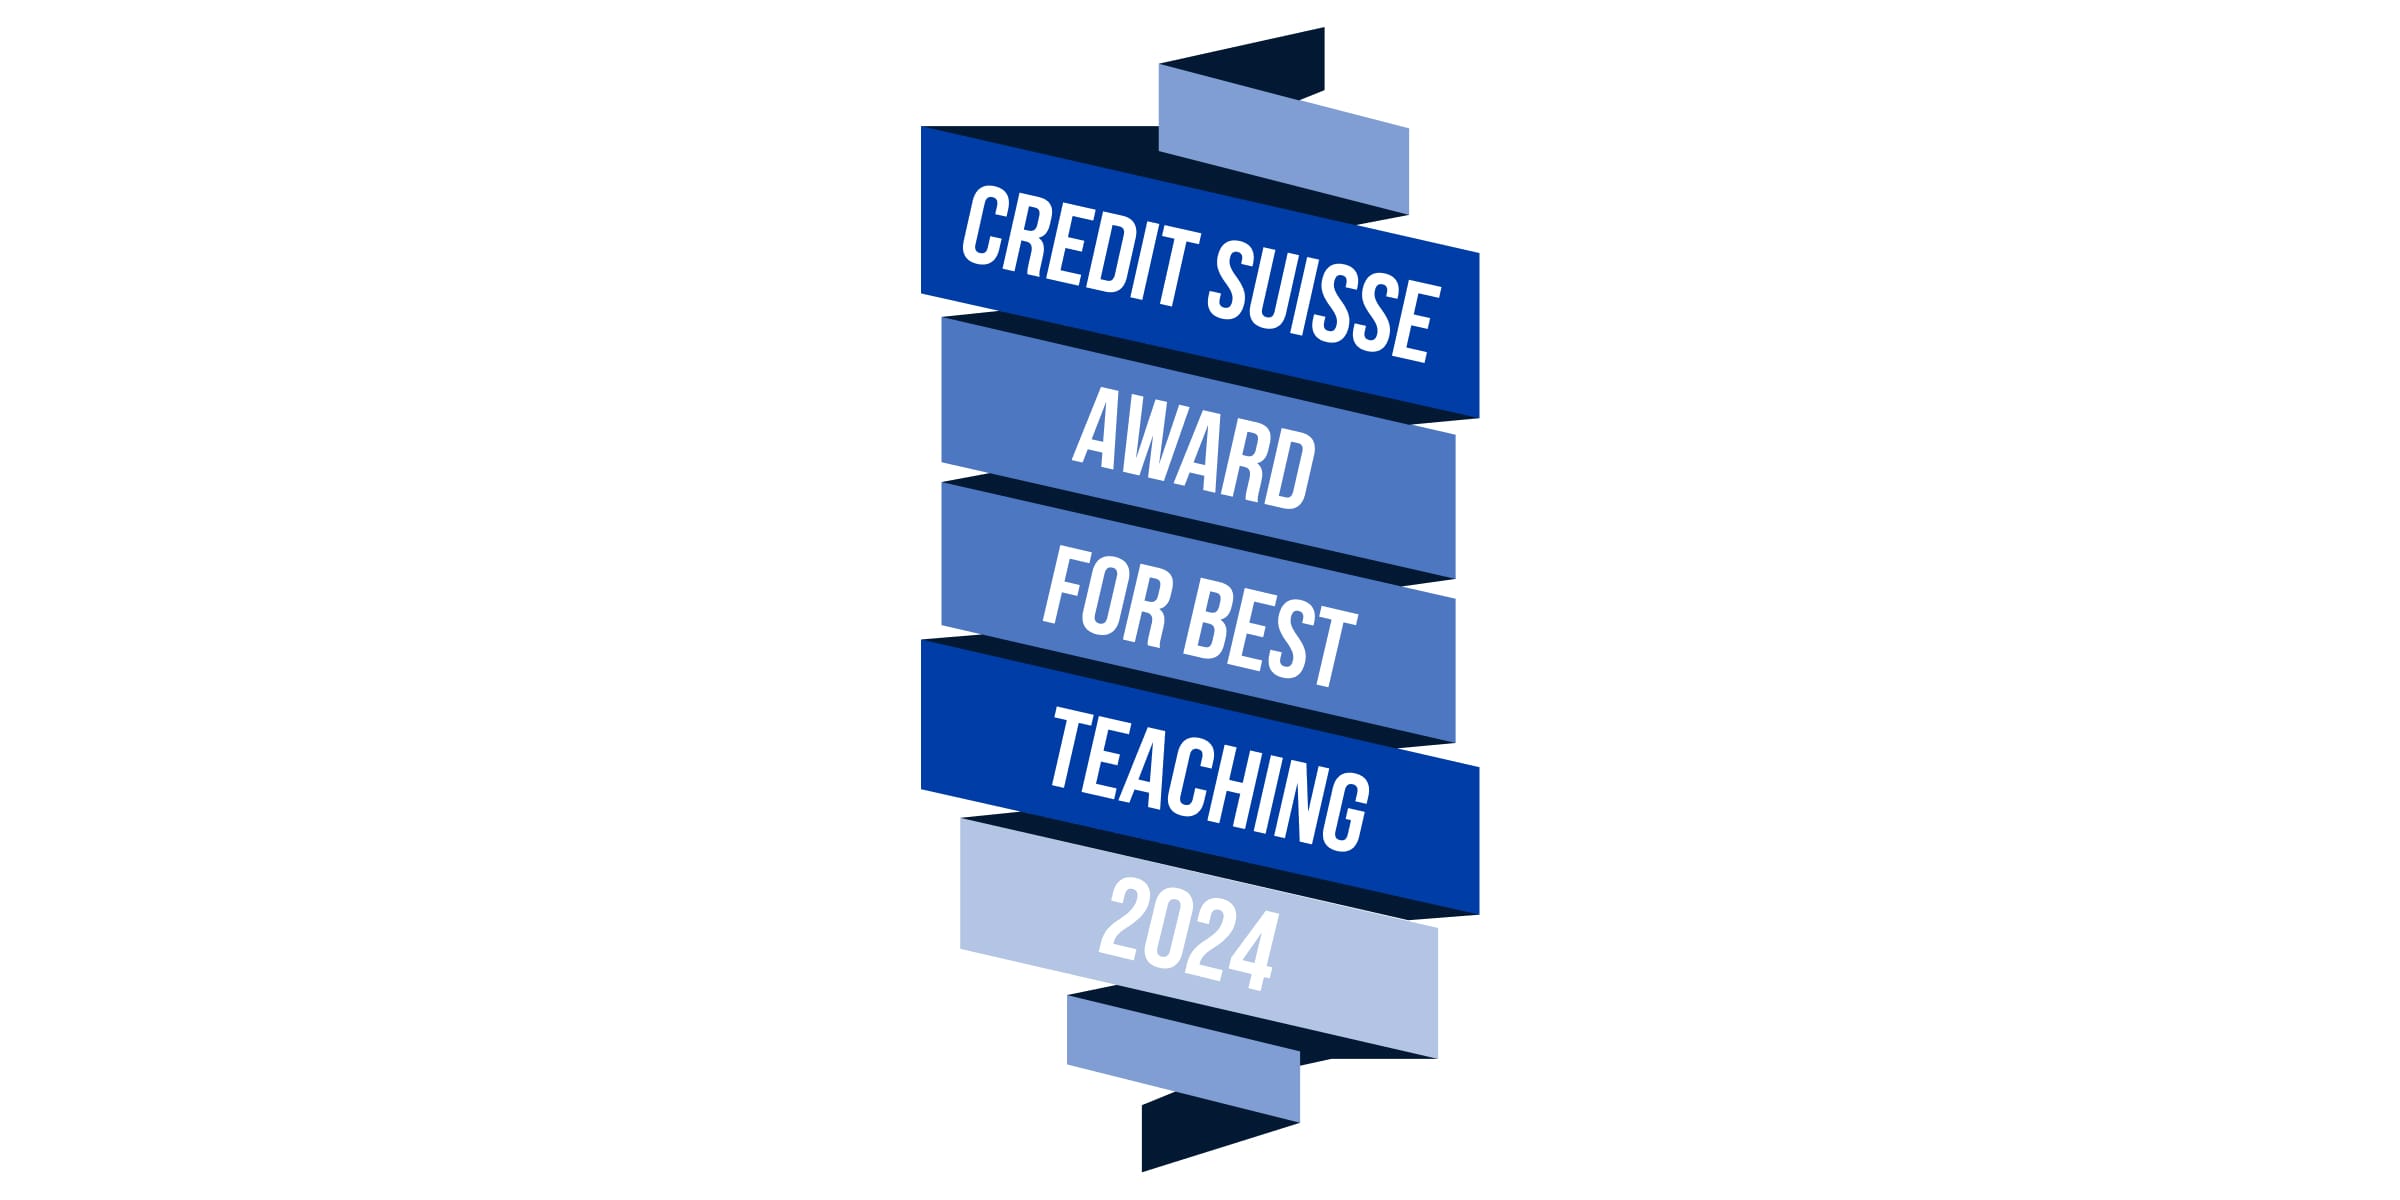 Award for Best Teaching 2024